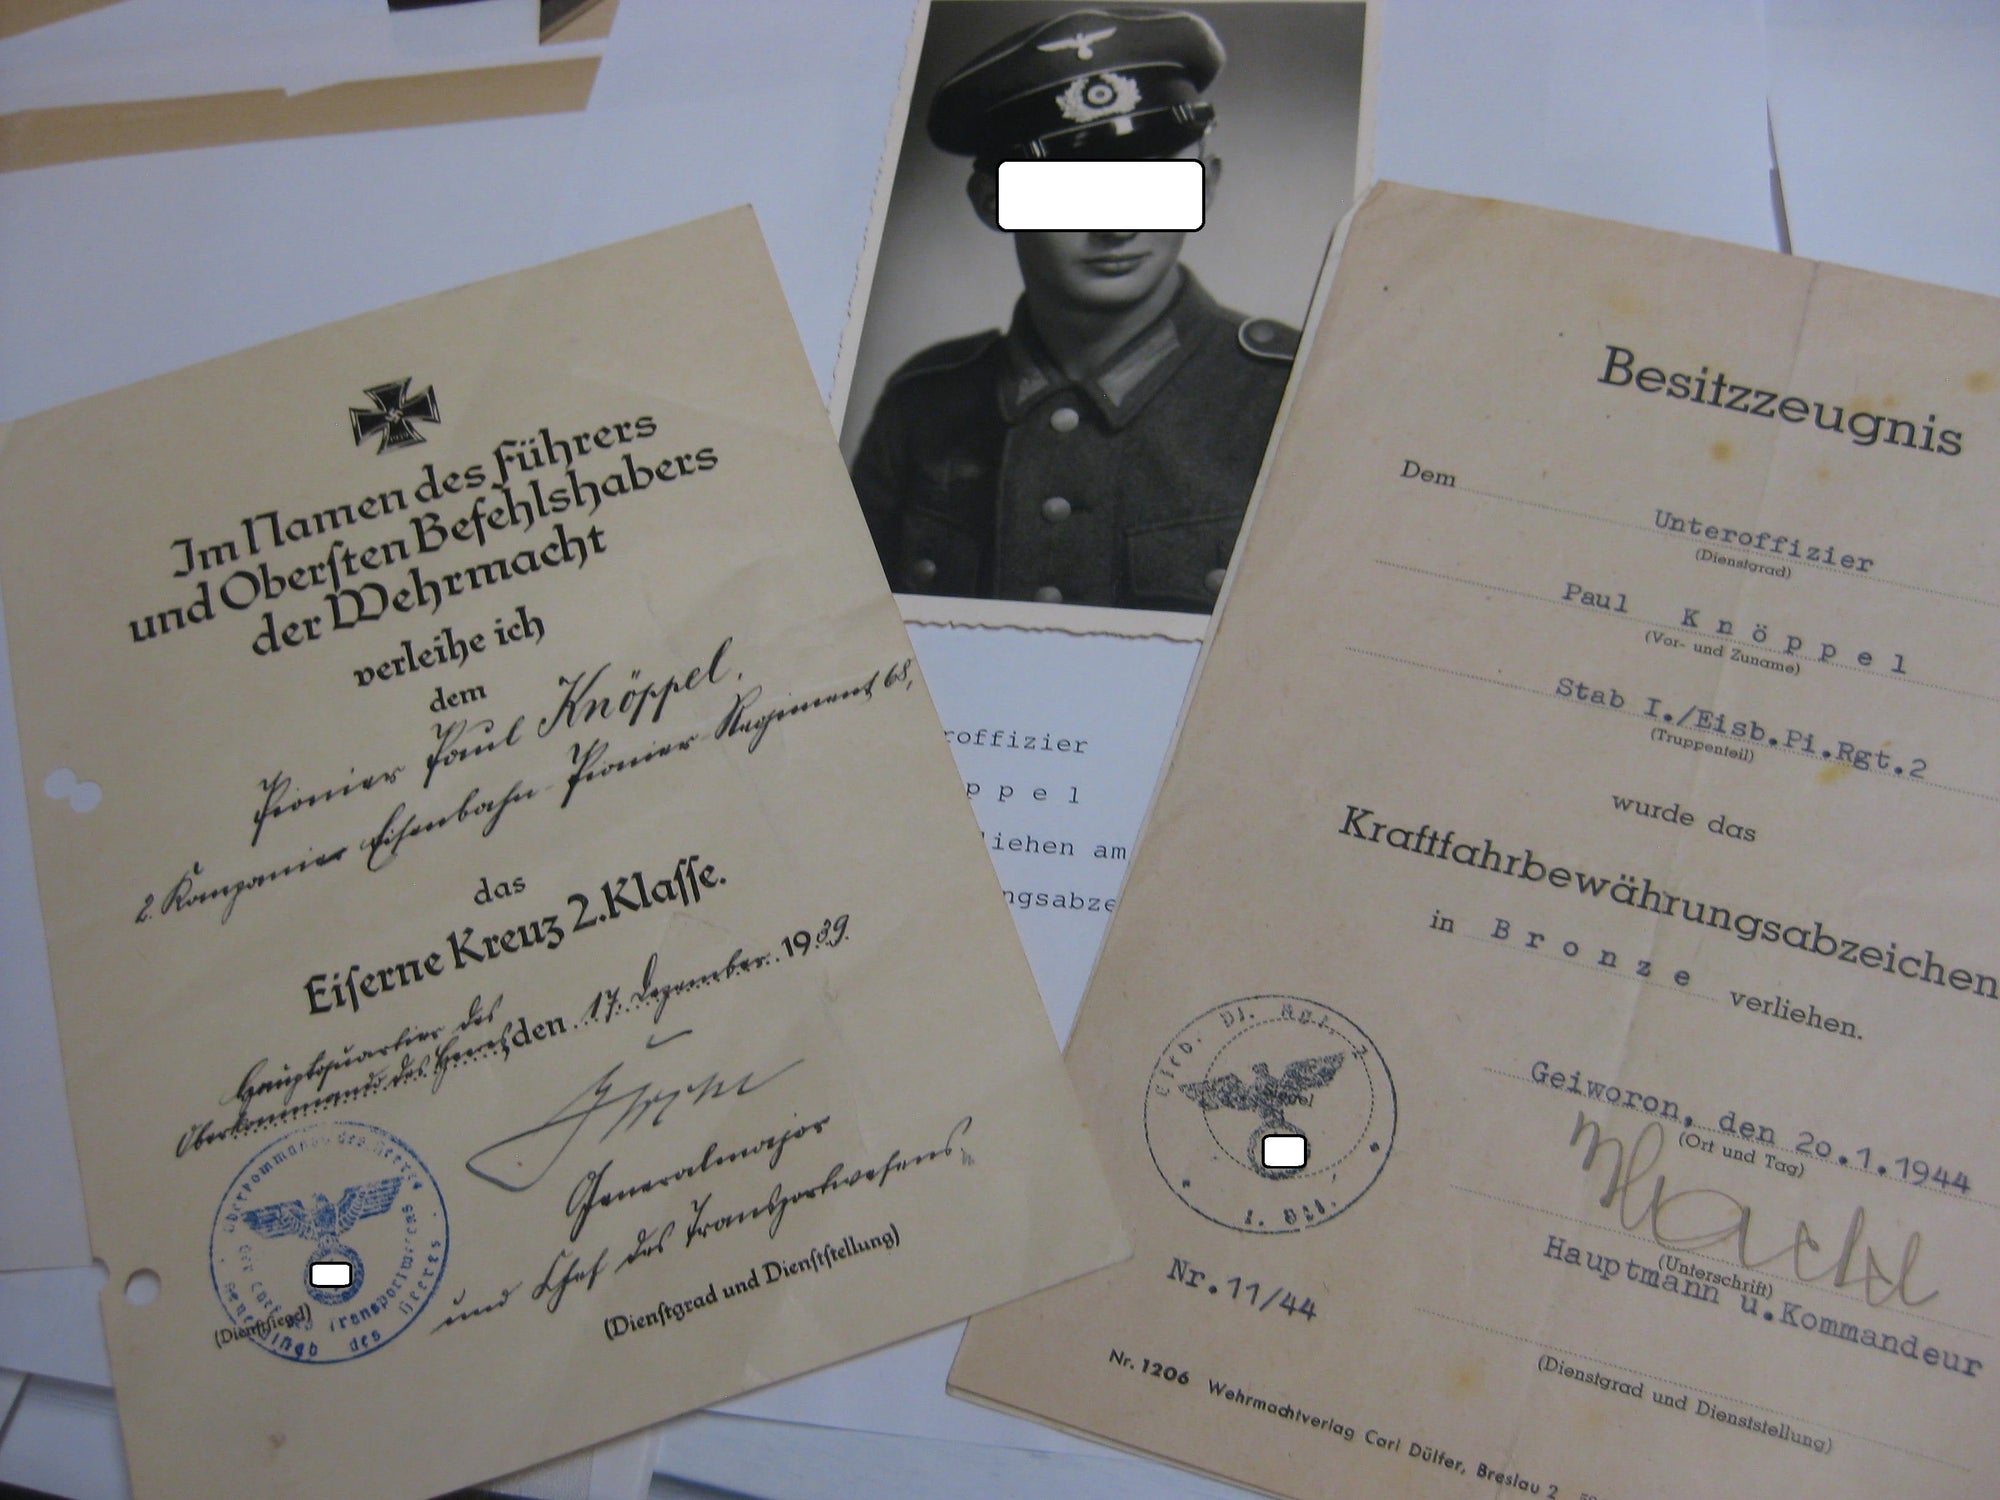 Besitzzeugnis Verleihungsurkunden Eisernes Kreuz Orden Wehrmacht Verleihung im Polenfeldzug